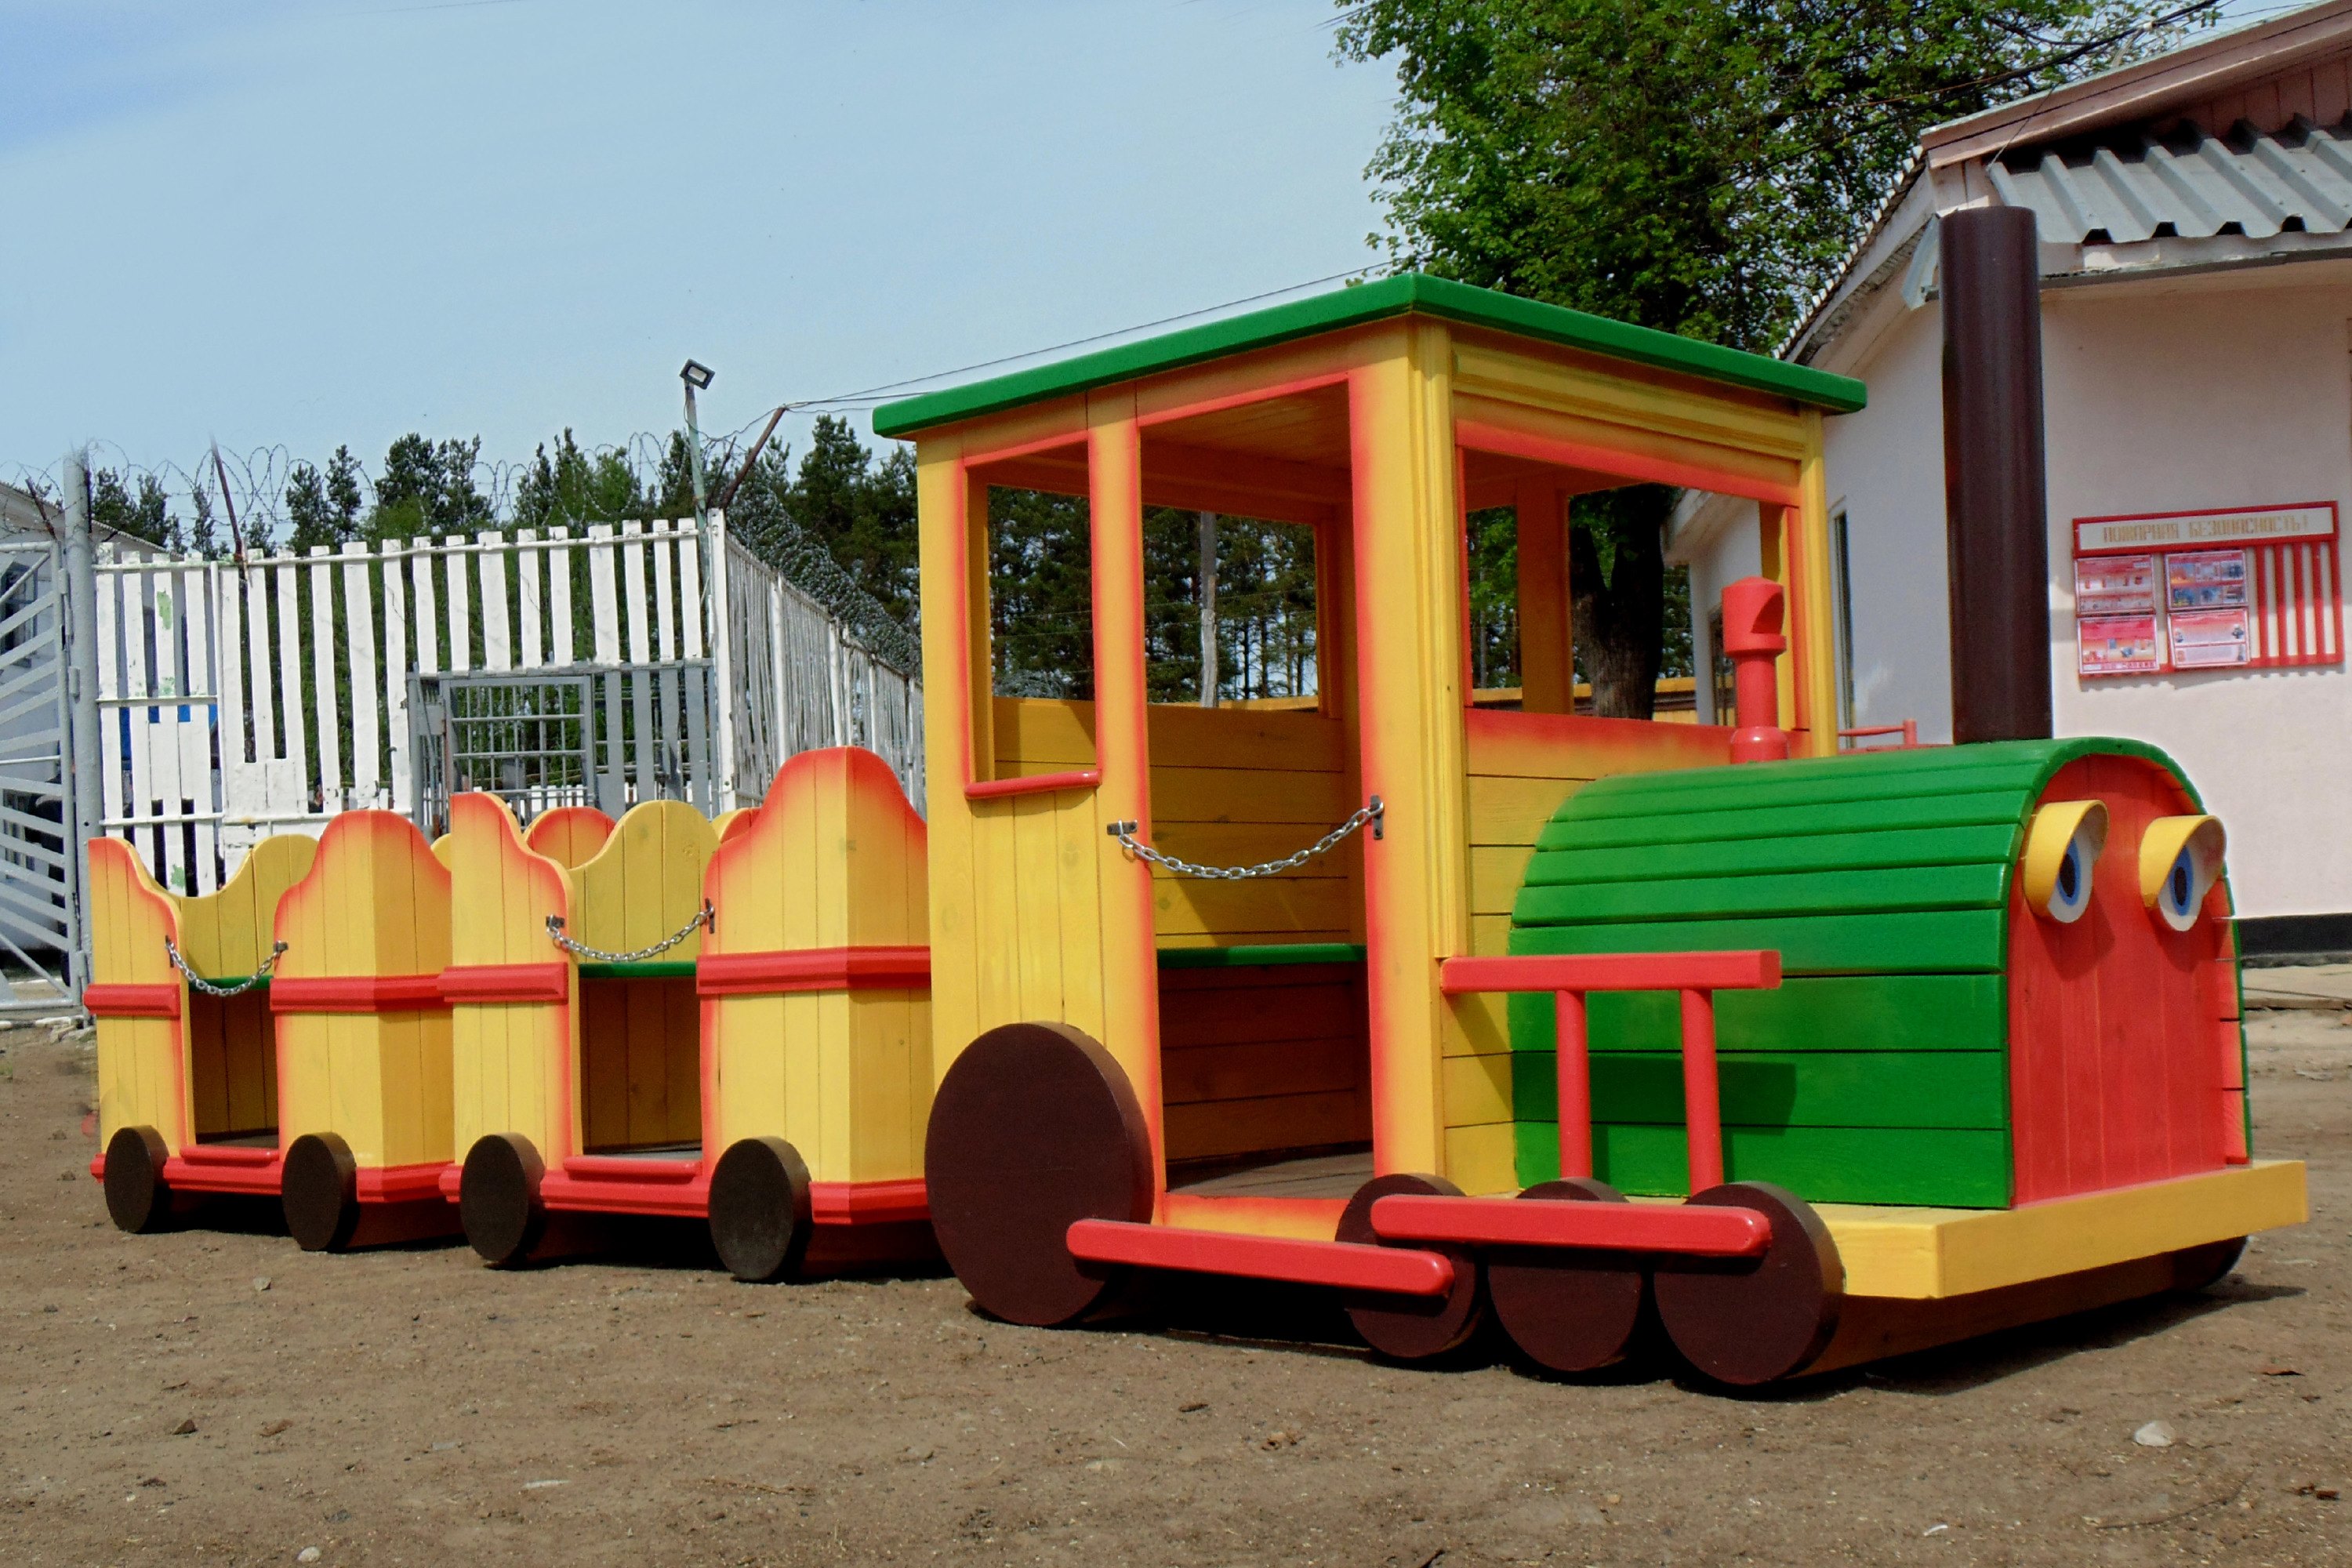 Деревянные постройки для детского сада